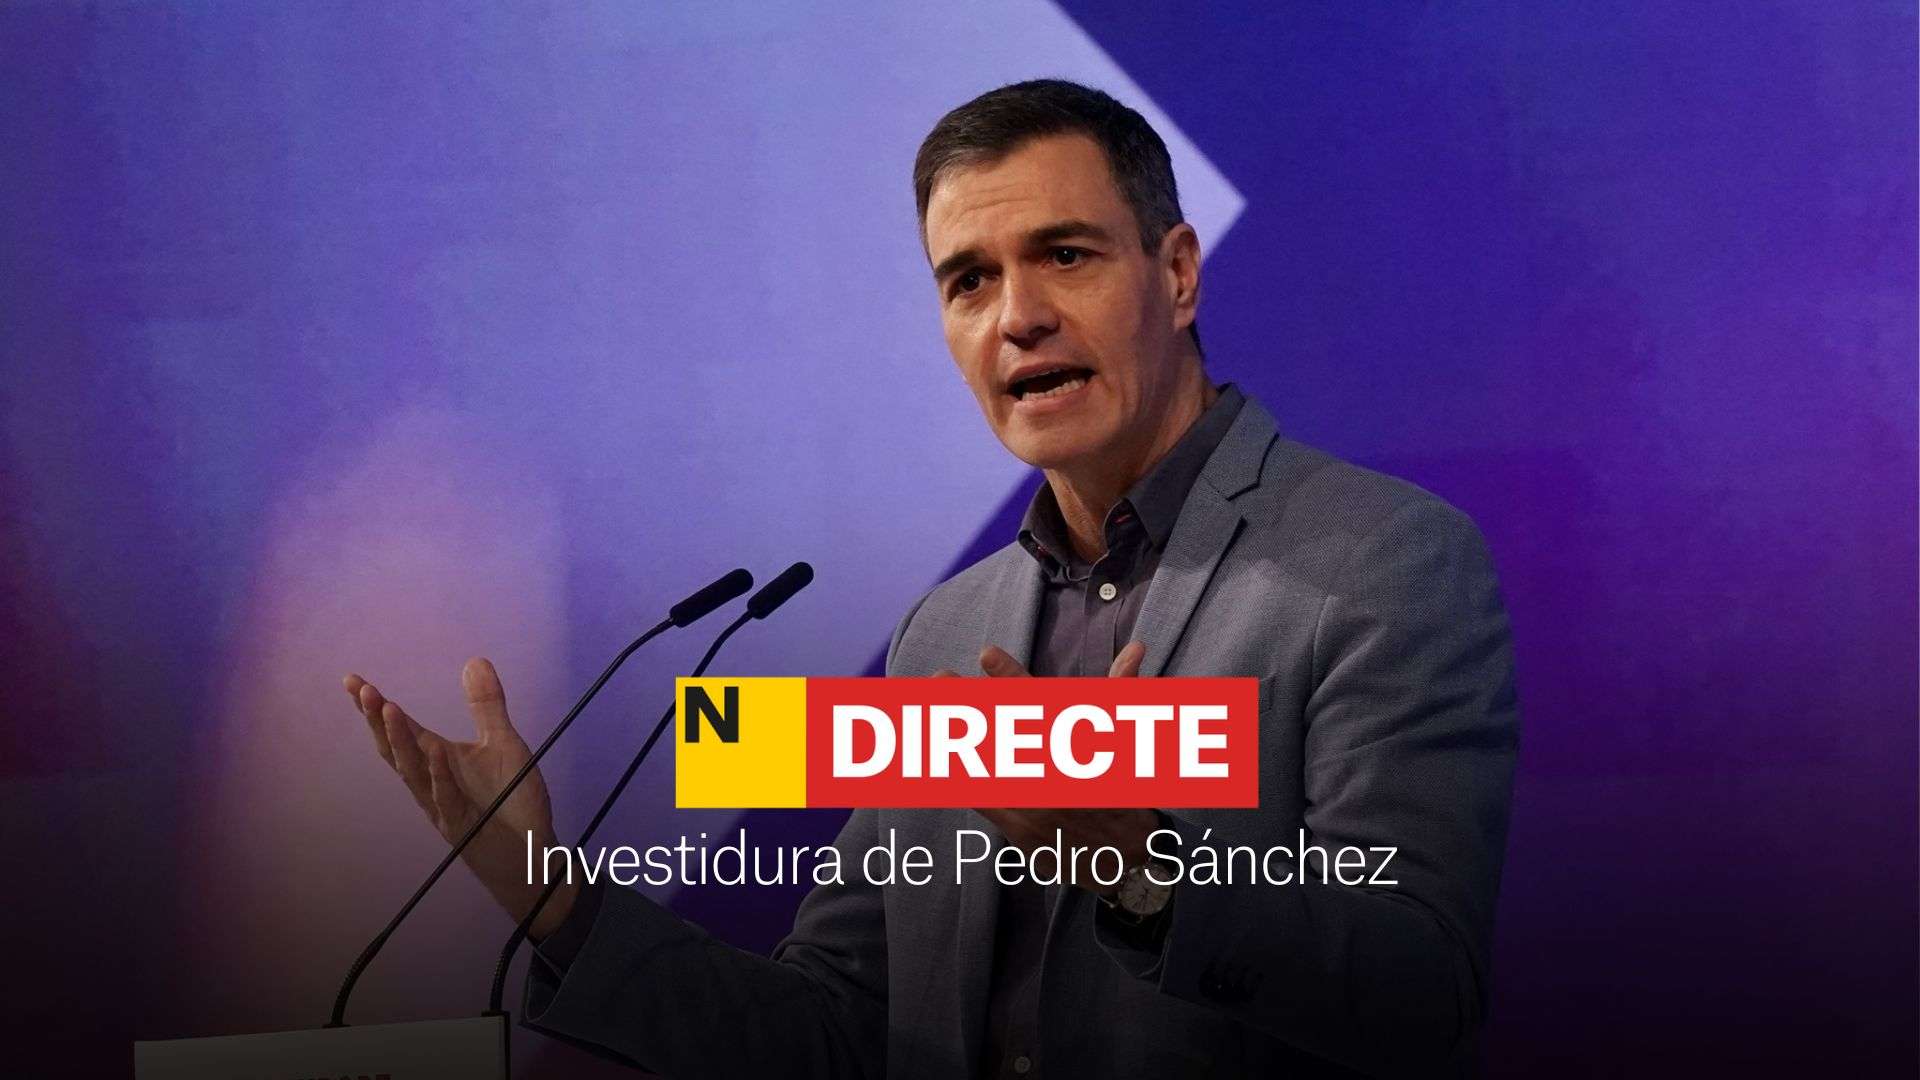 Investidura de Pedro Sánchez, DIRECTO | Última hora del debate, ley de amnistía y Puigdemont